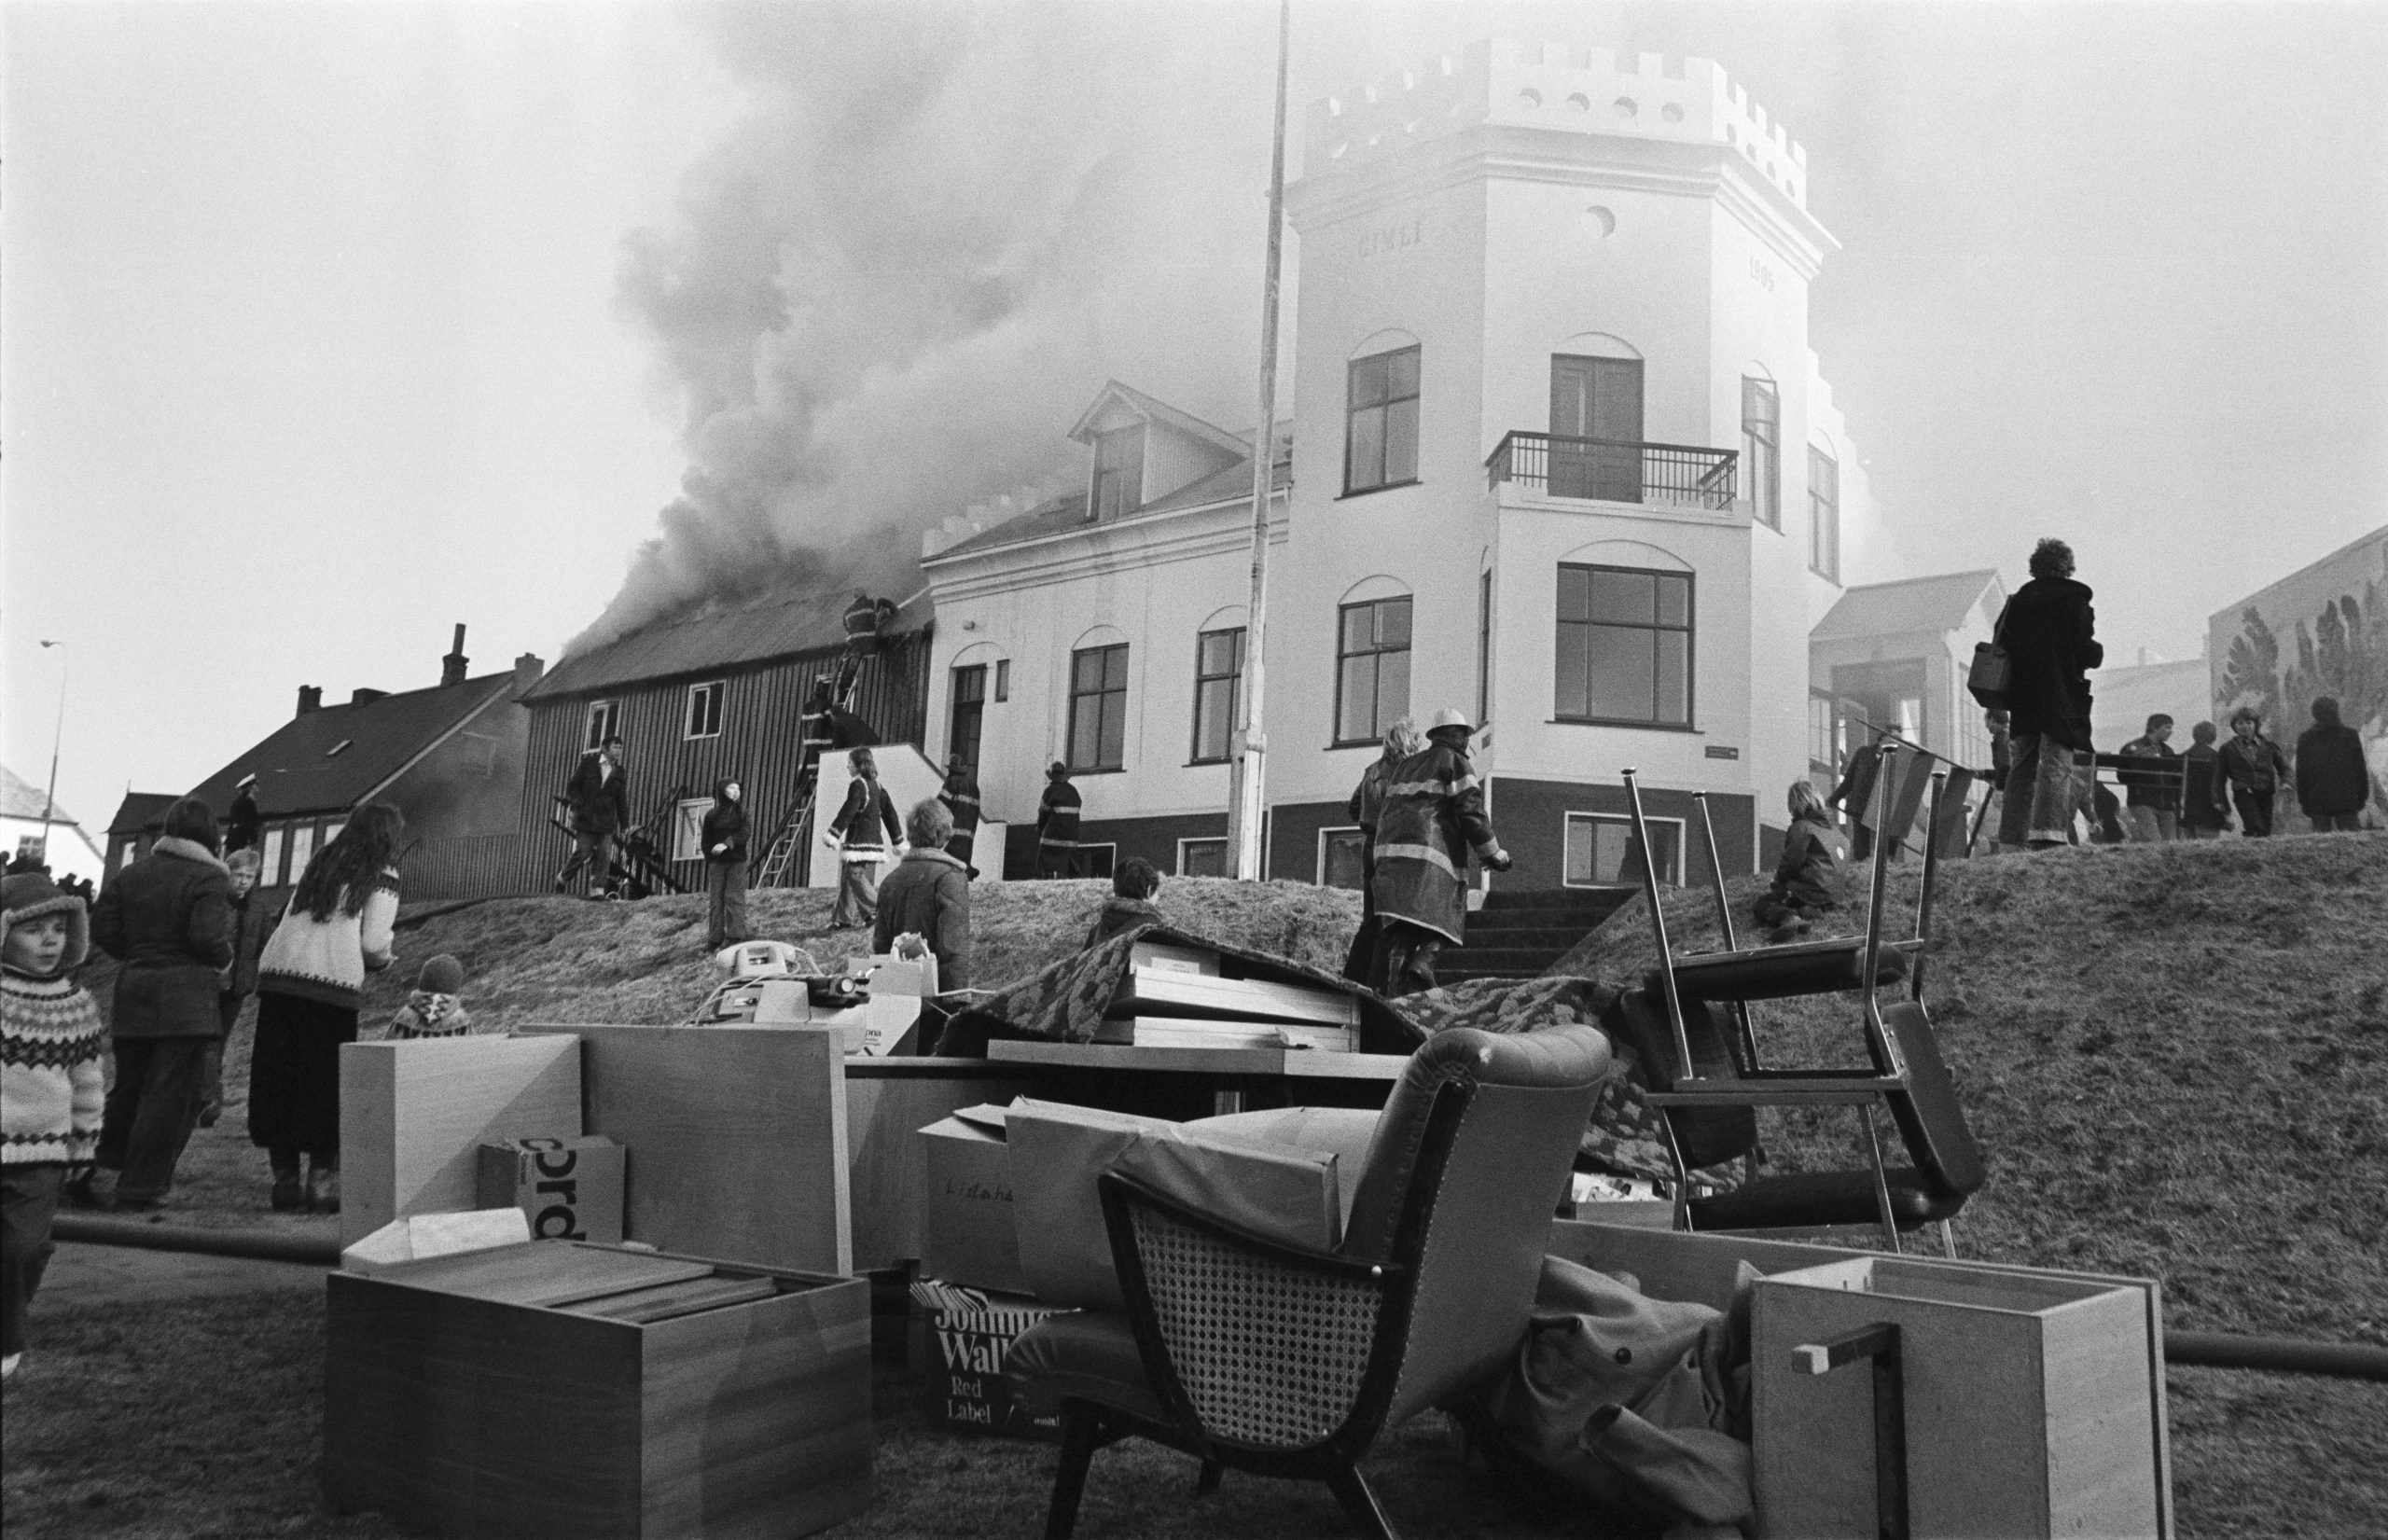 Fire in 1977